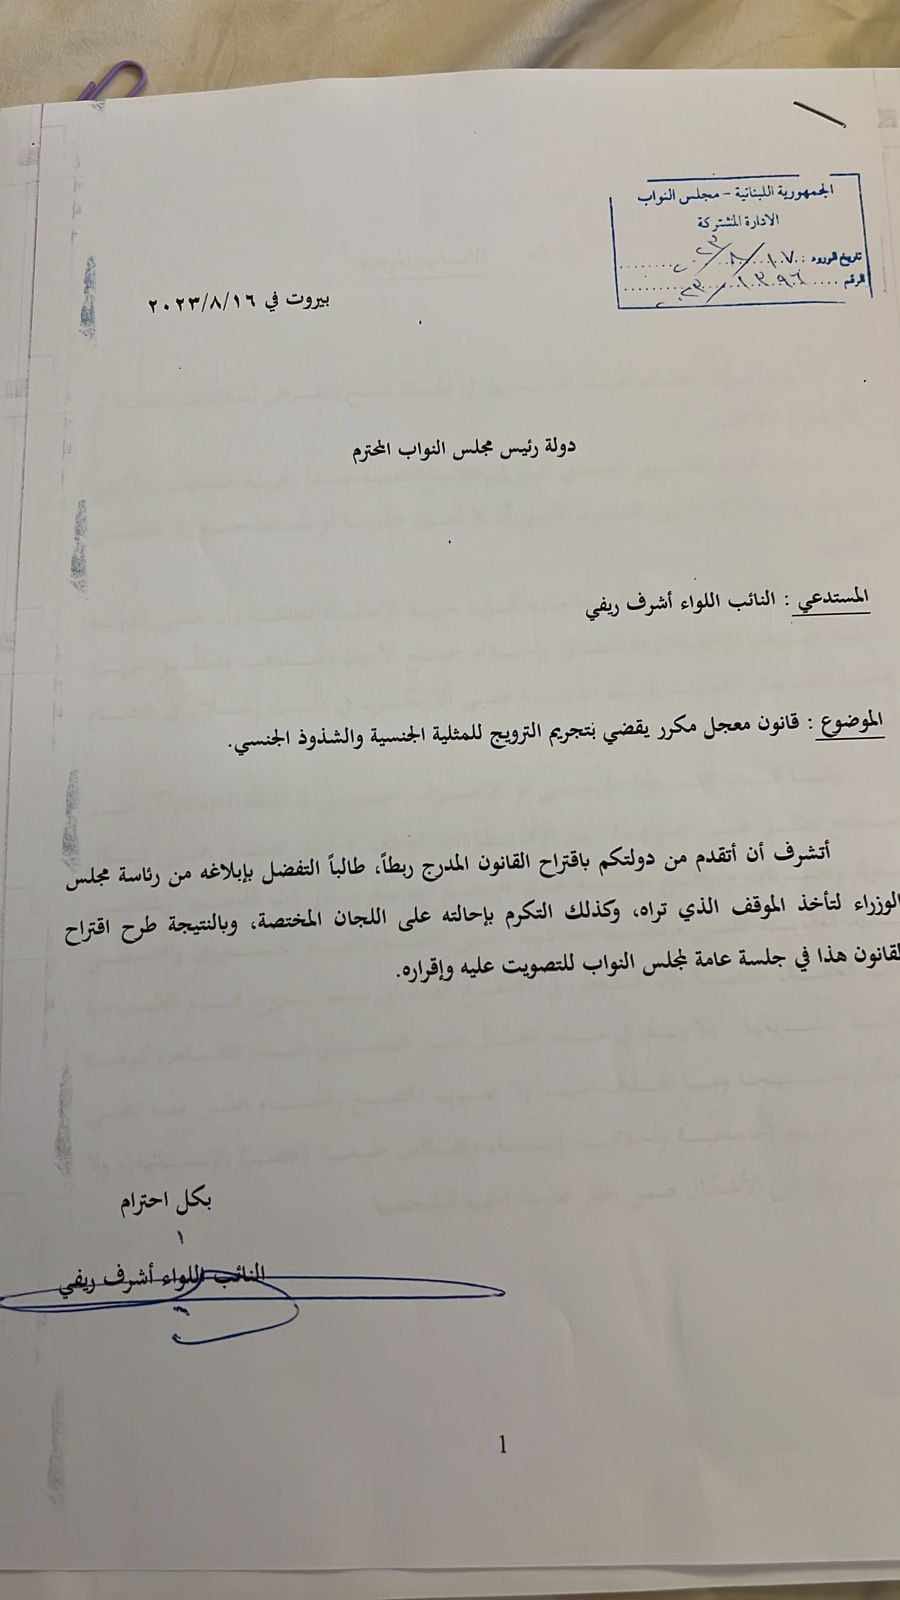 النائب أشرف ريفي يقترح قانونًا لتجريم الترويج للمثلية  والشذوذ الجنسي